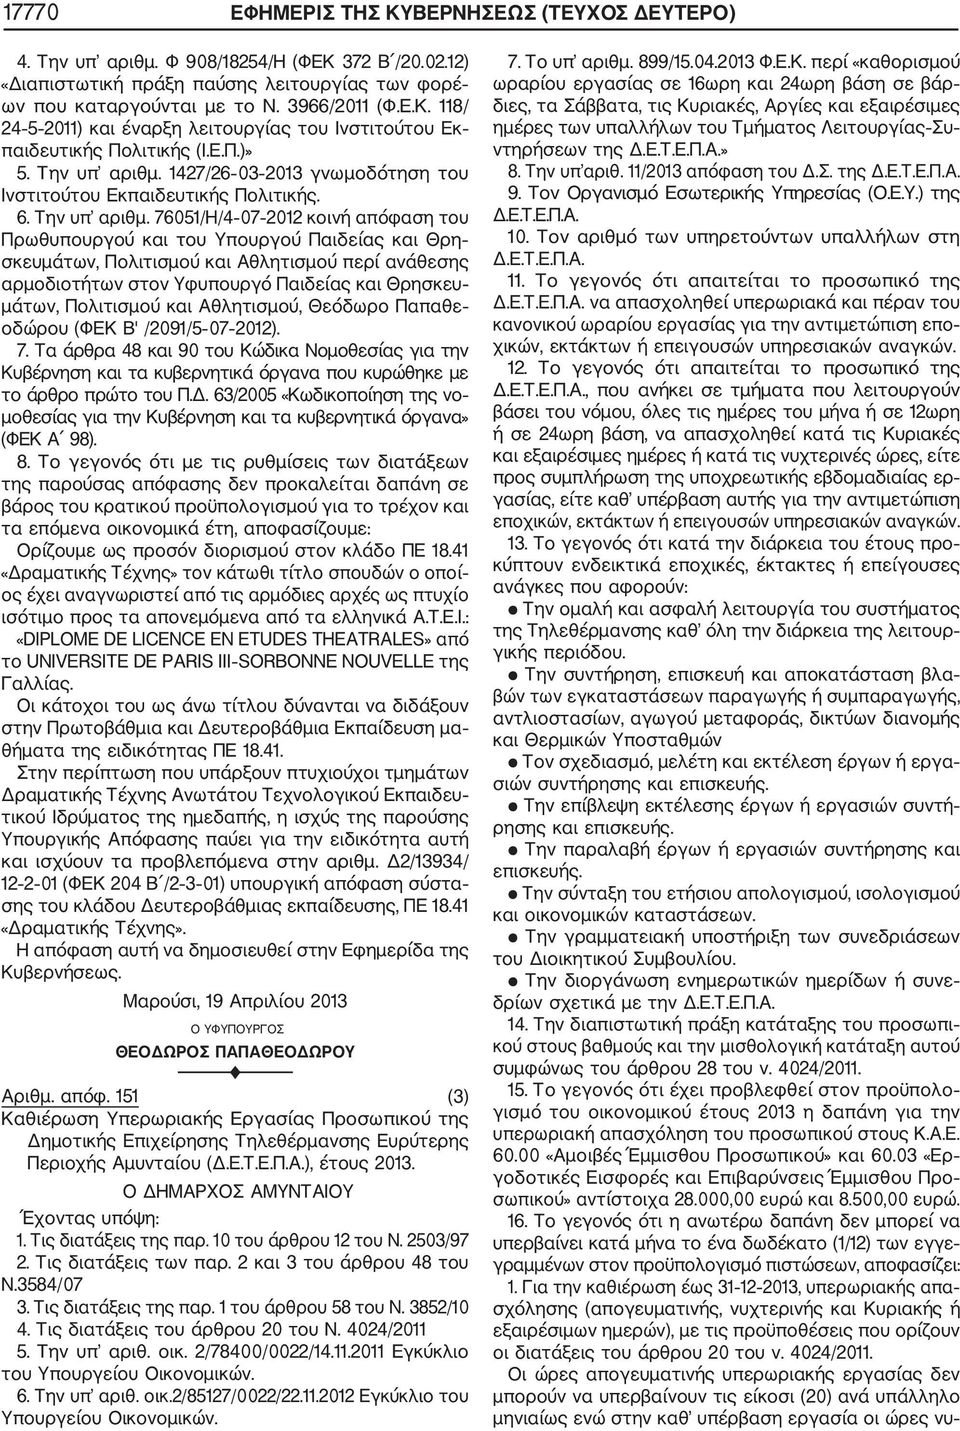 1427/26 03 2013 γνωμοδότηση του Ινστιτούτου Εκπαιδευτικής Πολιτικής. 6. Την υπ αριθμ.